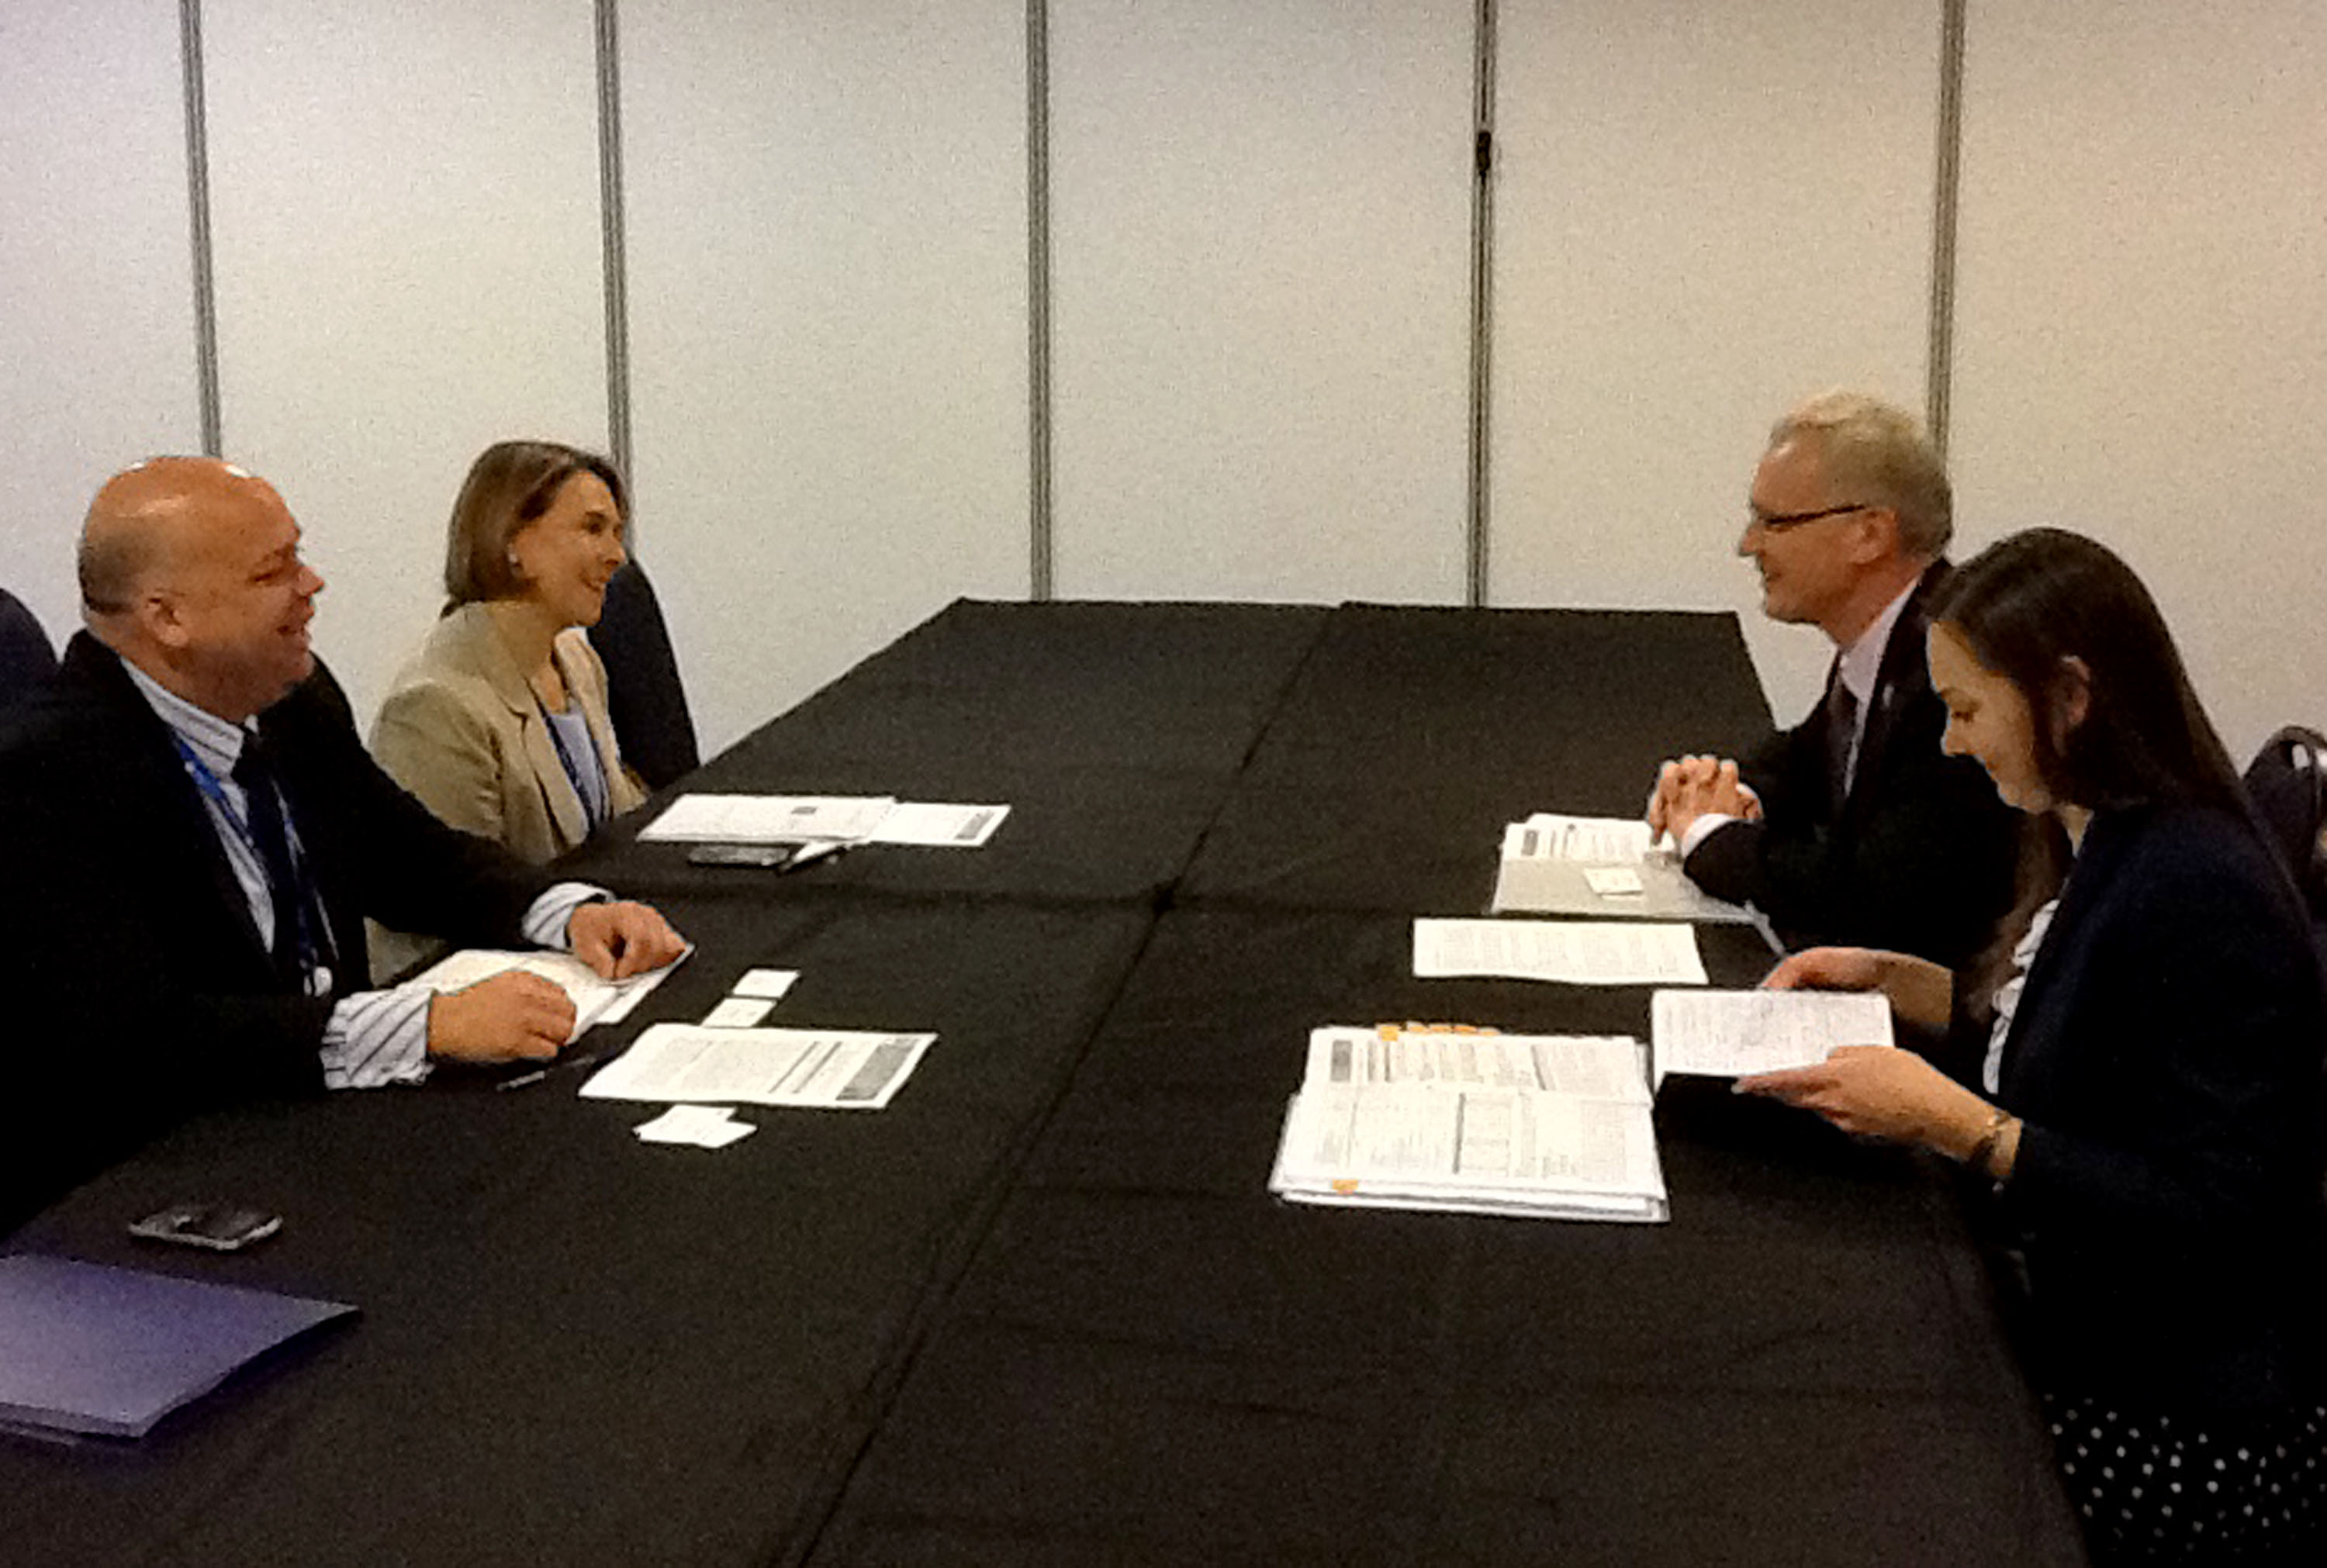 Viceministra Mónica Lanzetta se reunió con su homólogo de Letonia en el marco de los encuentros previos a la I Cumbre de Jefes de Estado y de Gobierno de la CELAC – UE que se realizará en Chile